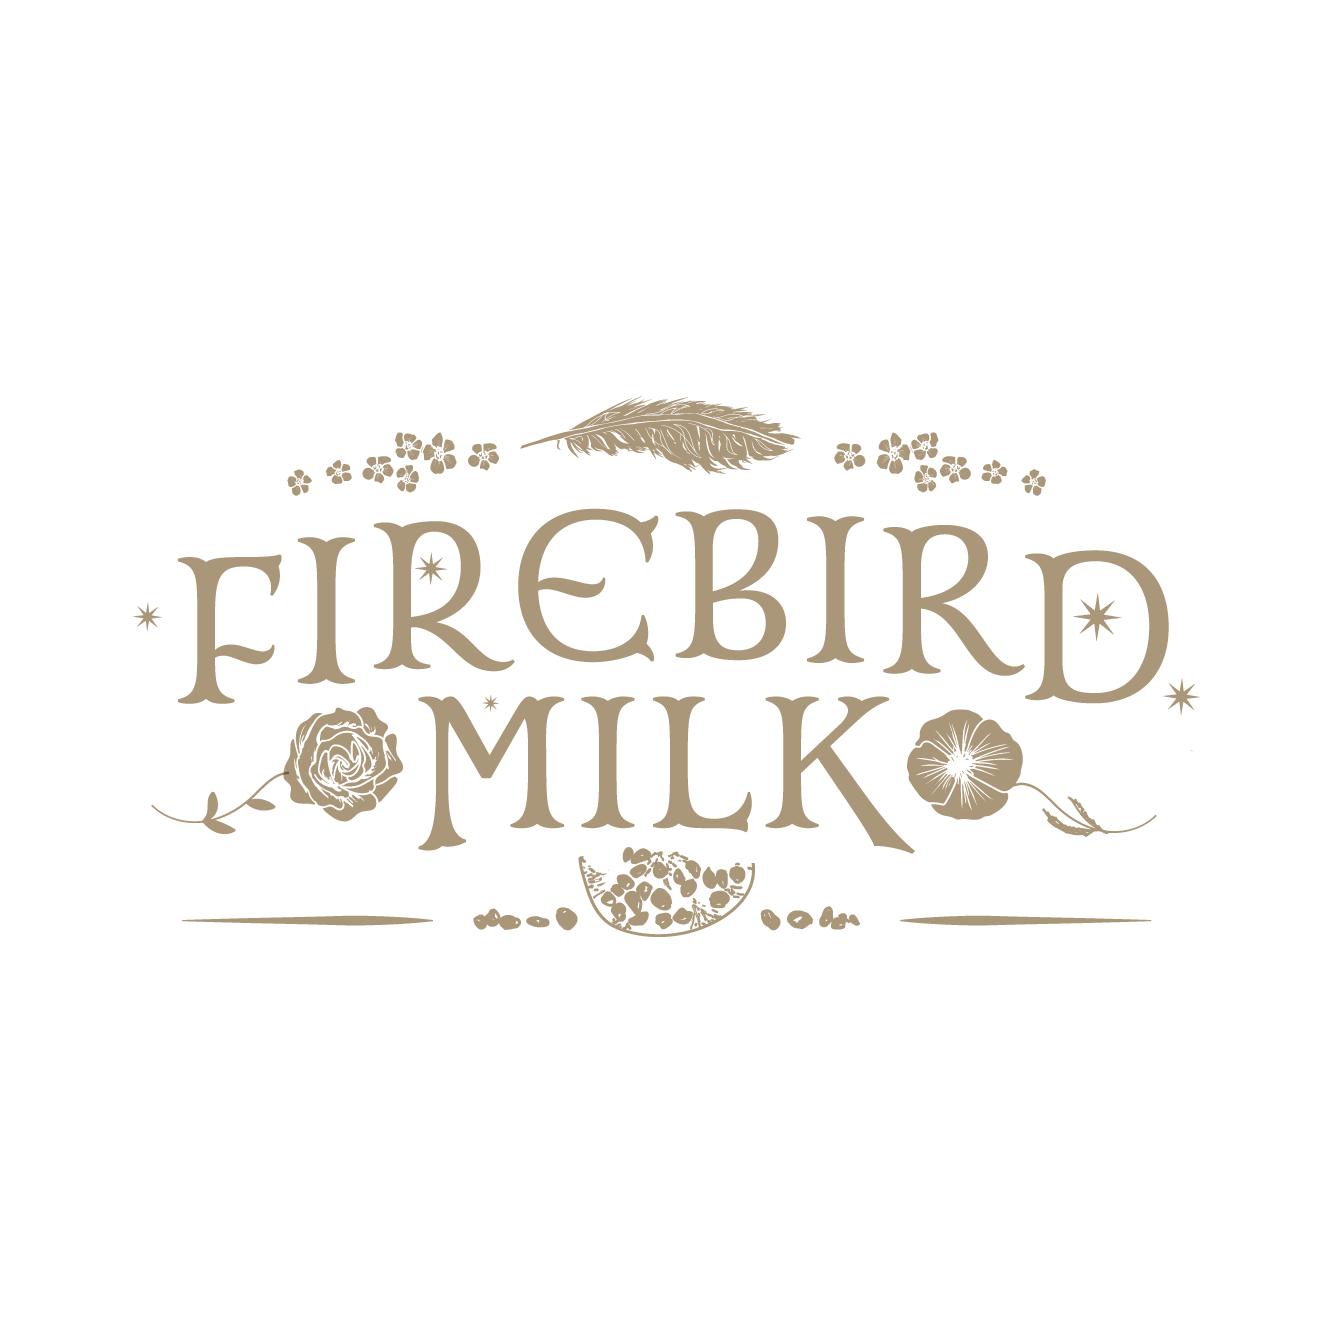 brand design by blade_feature logo_firebird milk.png